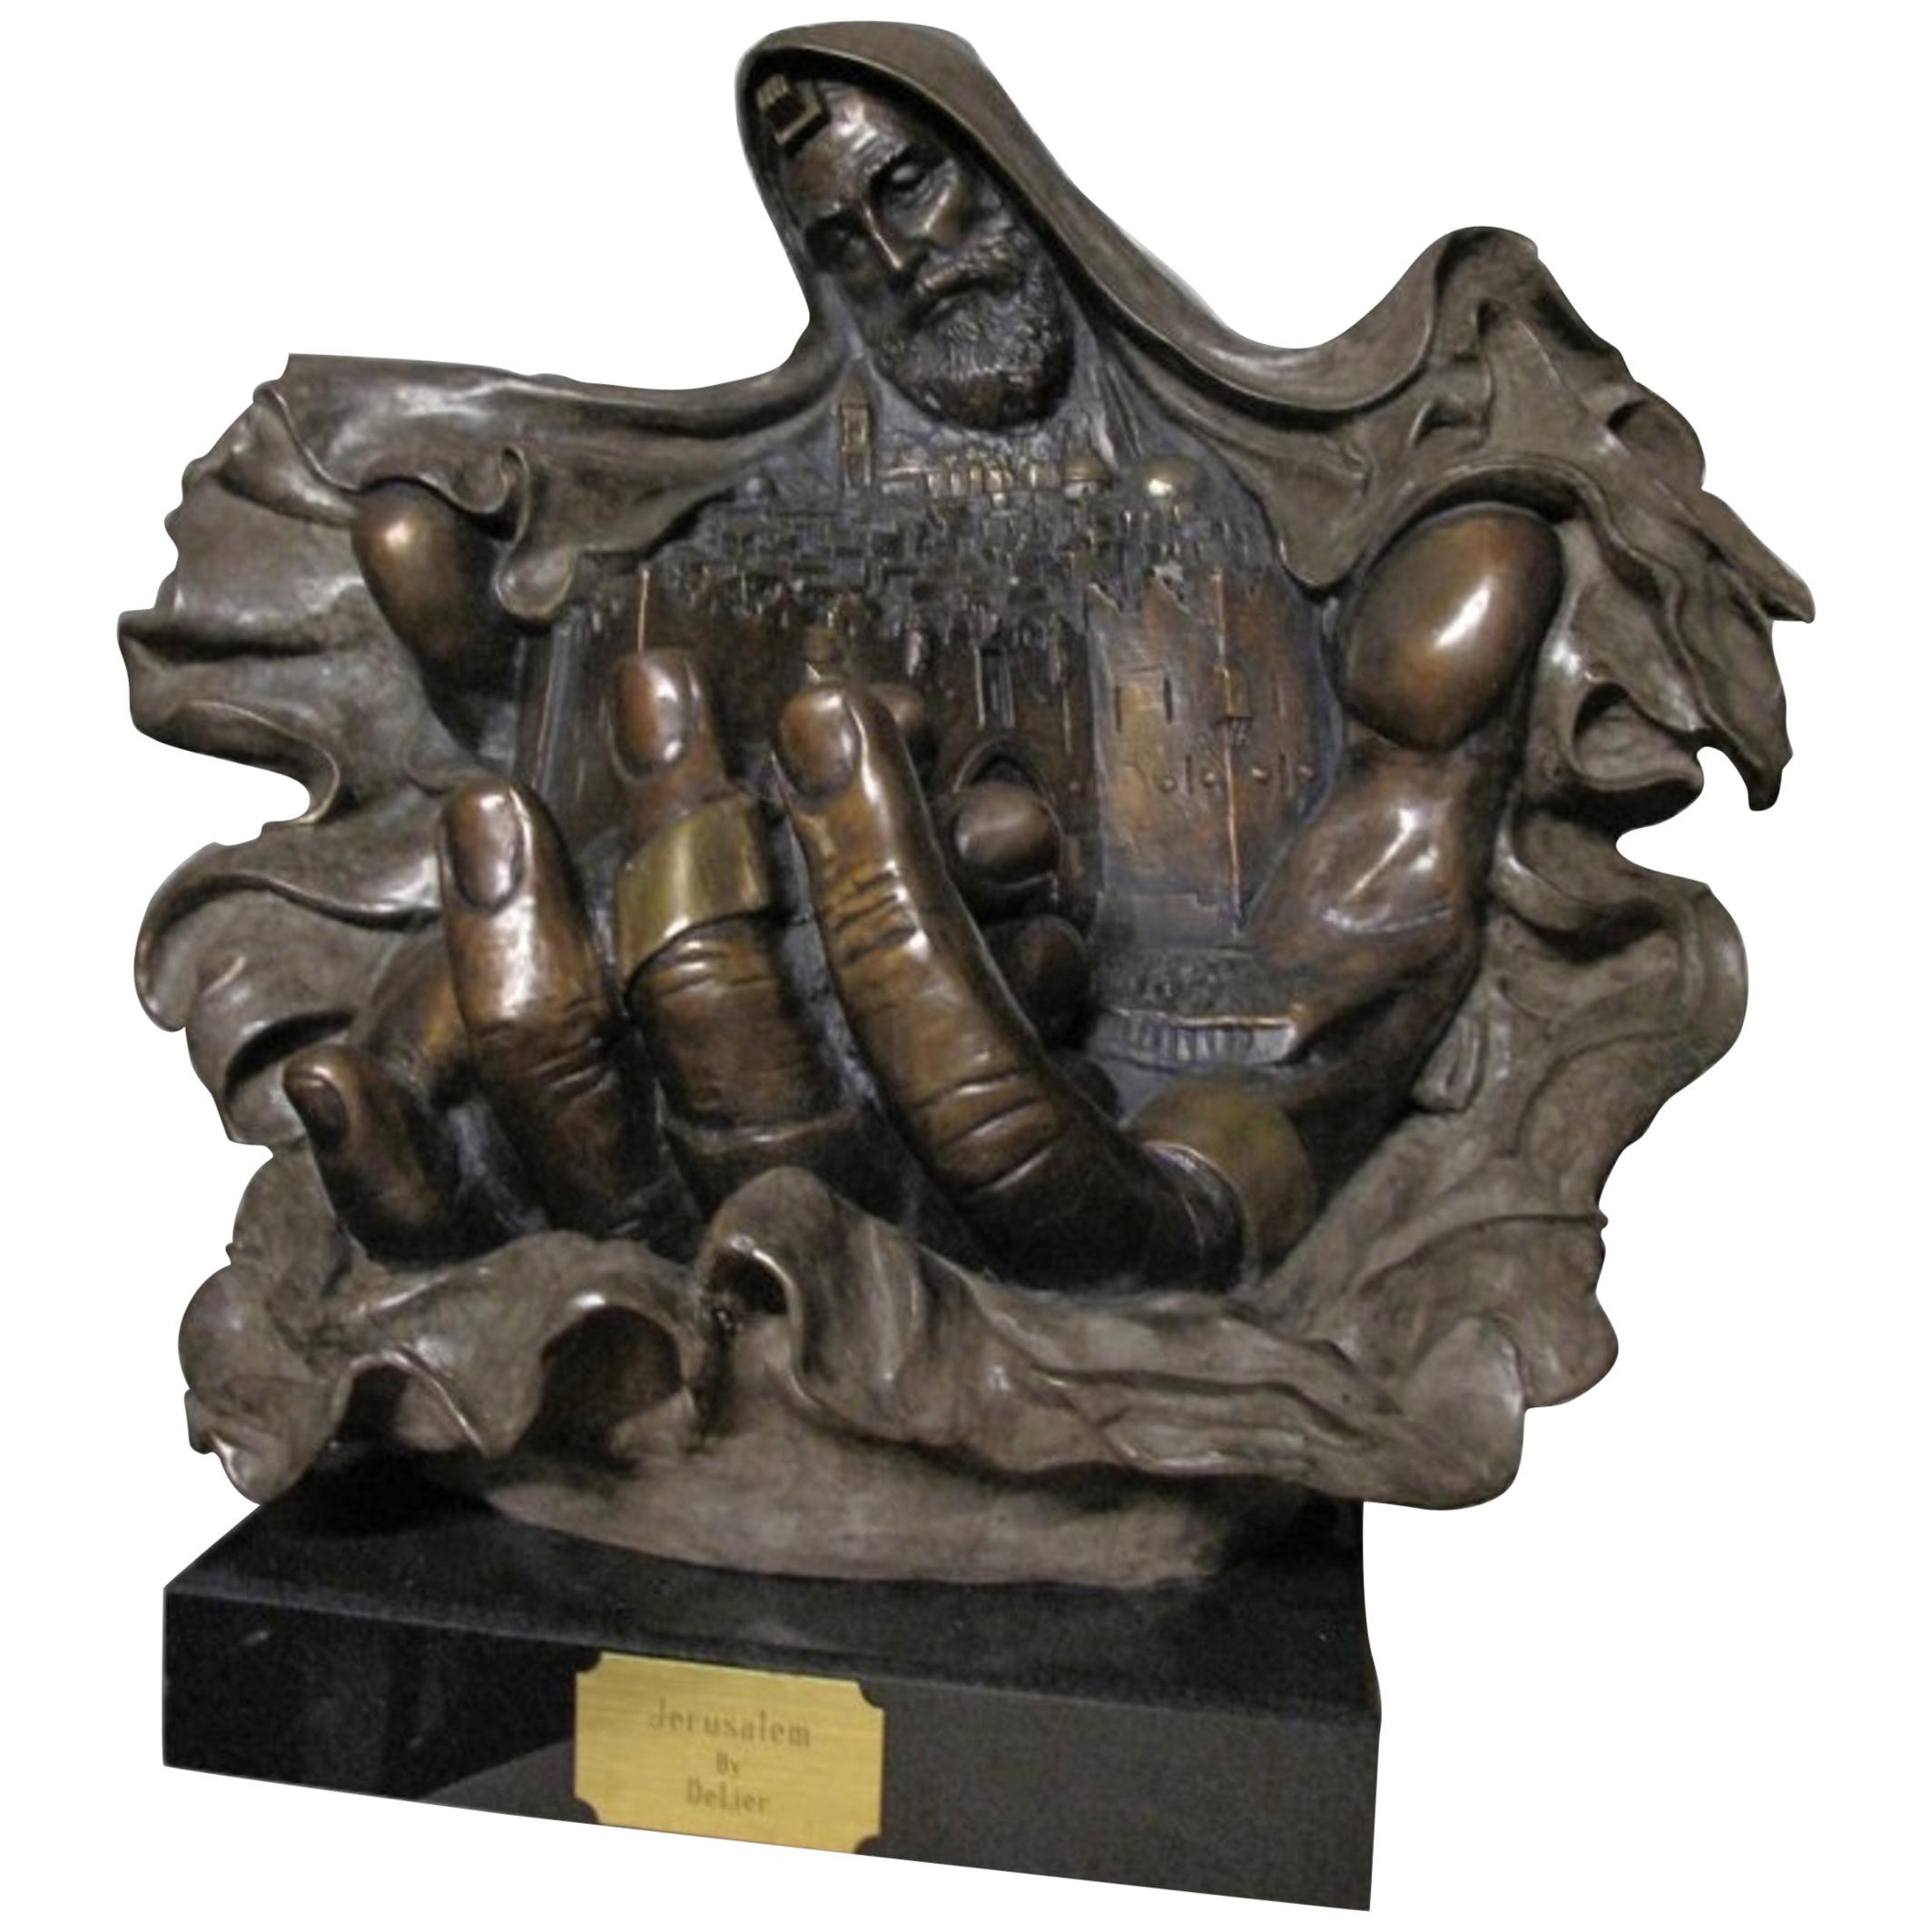 Skulptur aus patinierter Bronze „Jerusalem“ von Delier